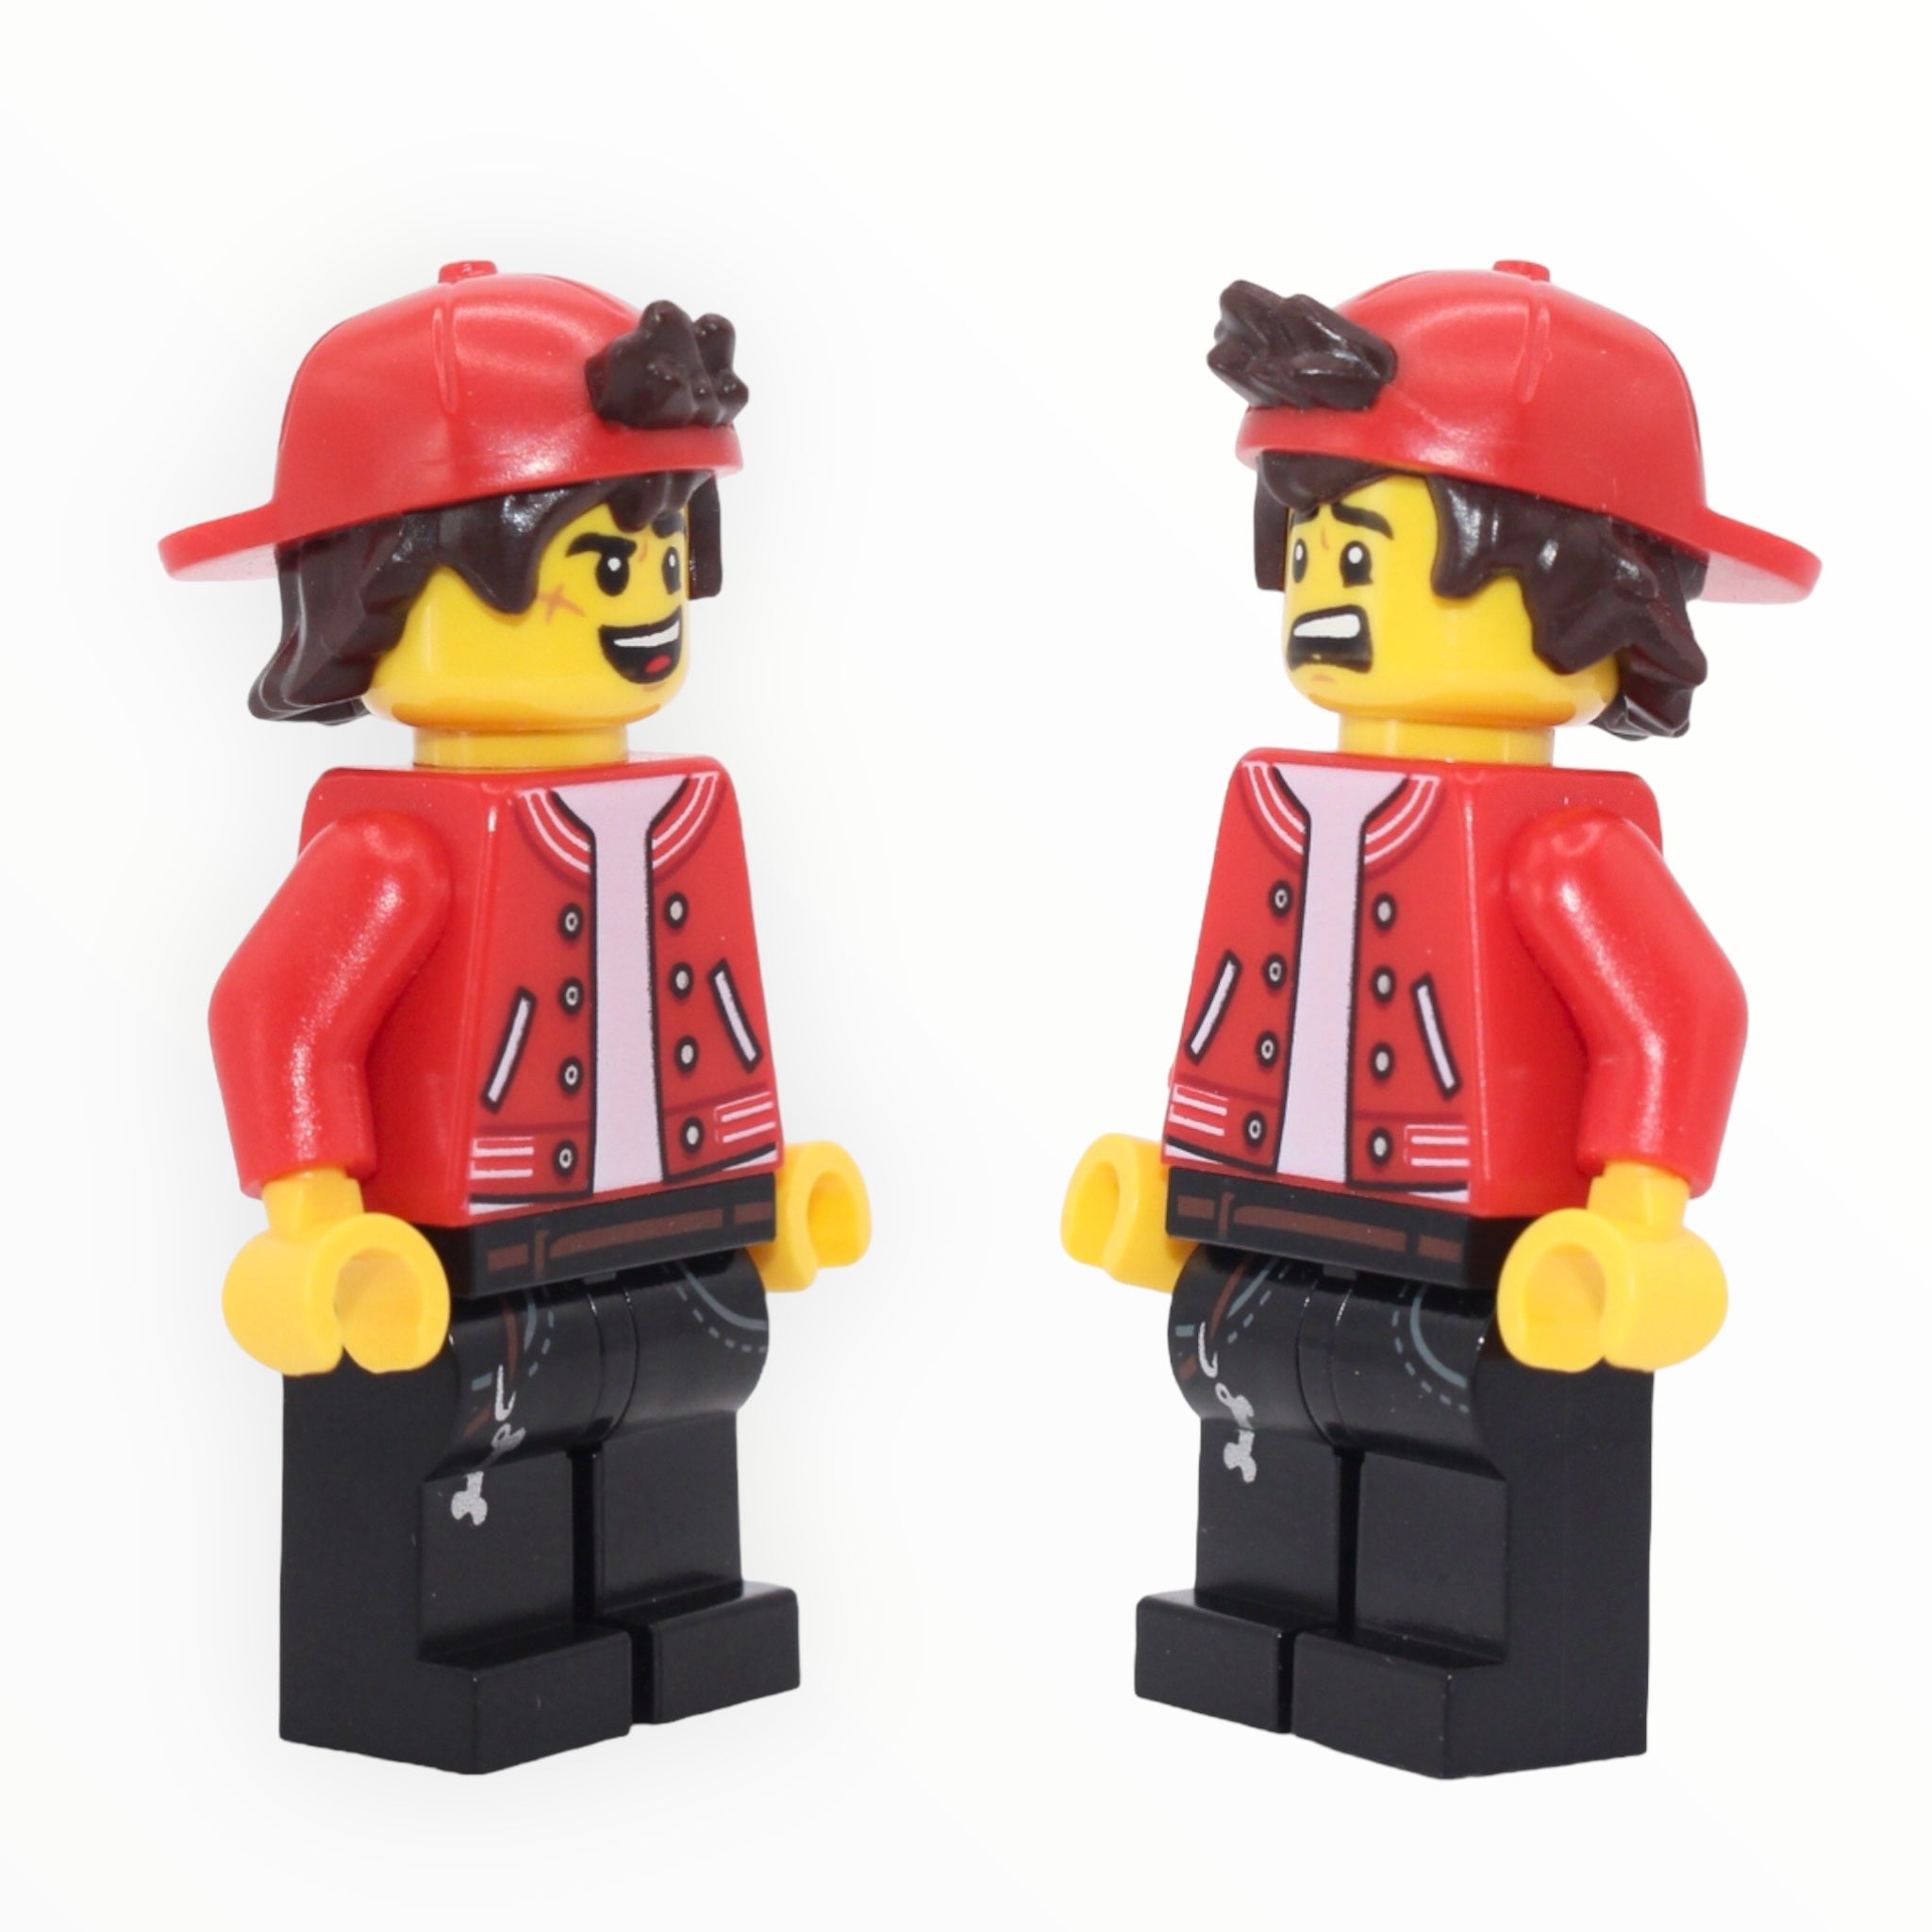 Jack Davids (backwards cap, red jacket, open mouth smile / scared)